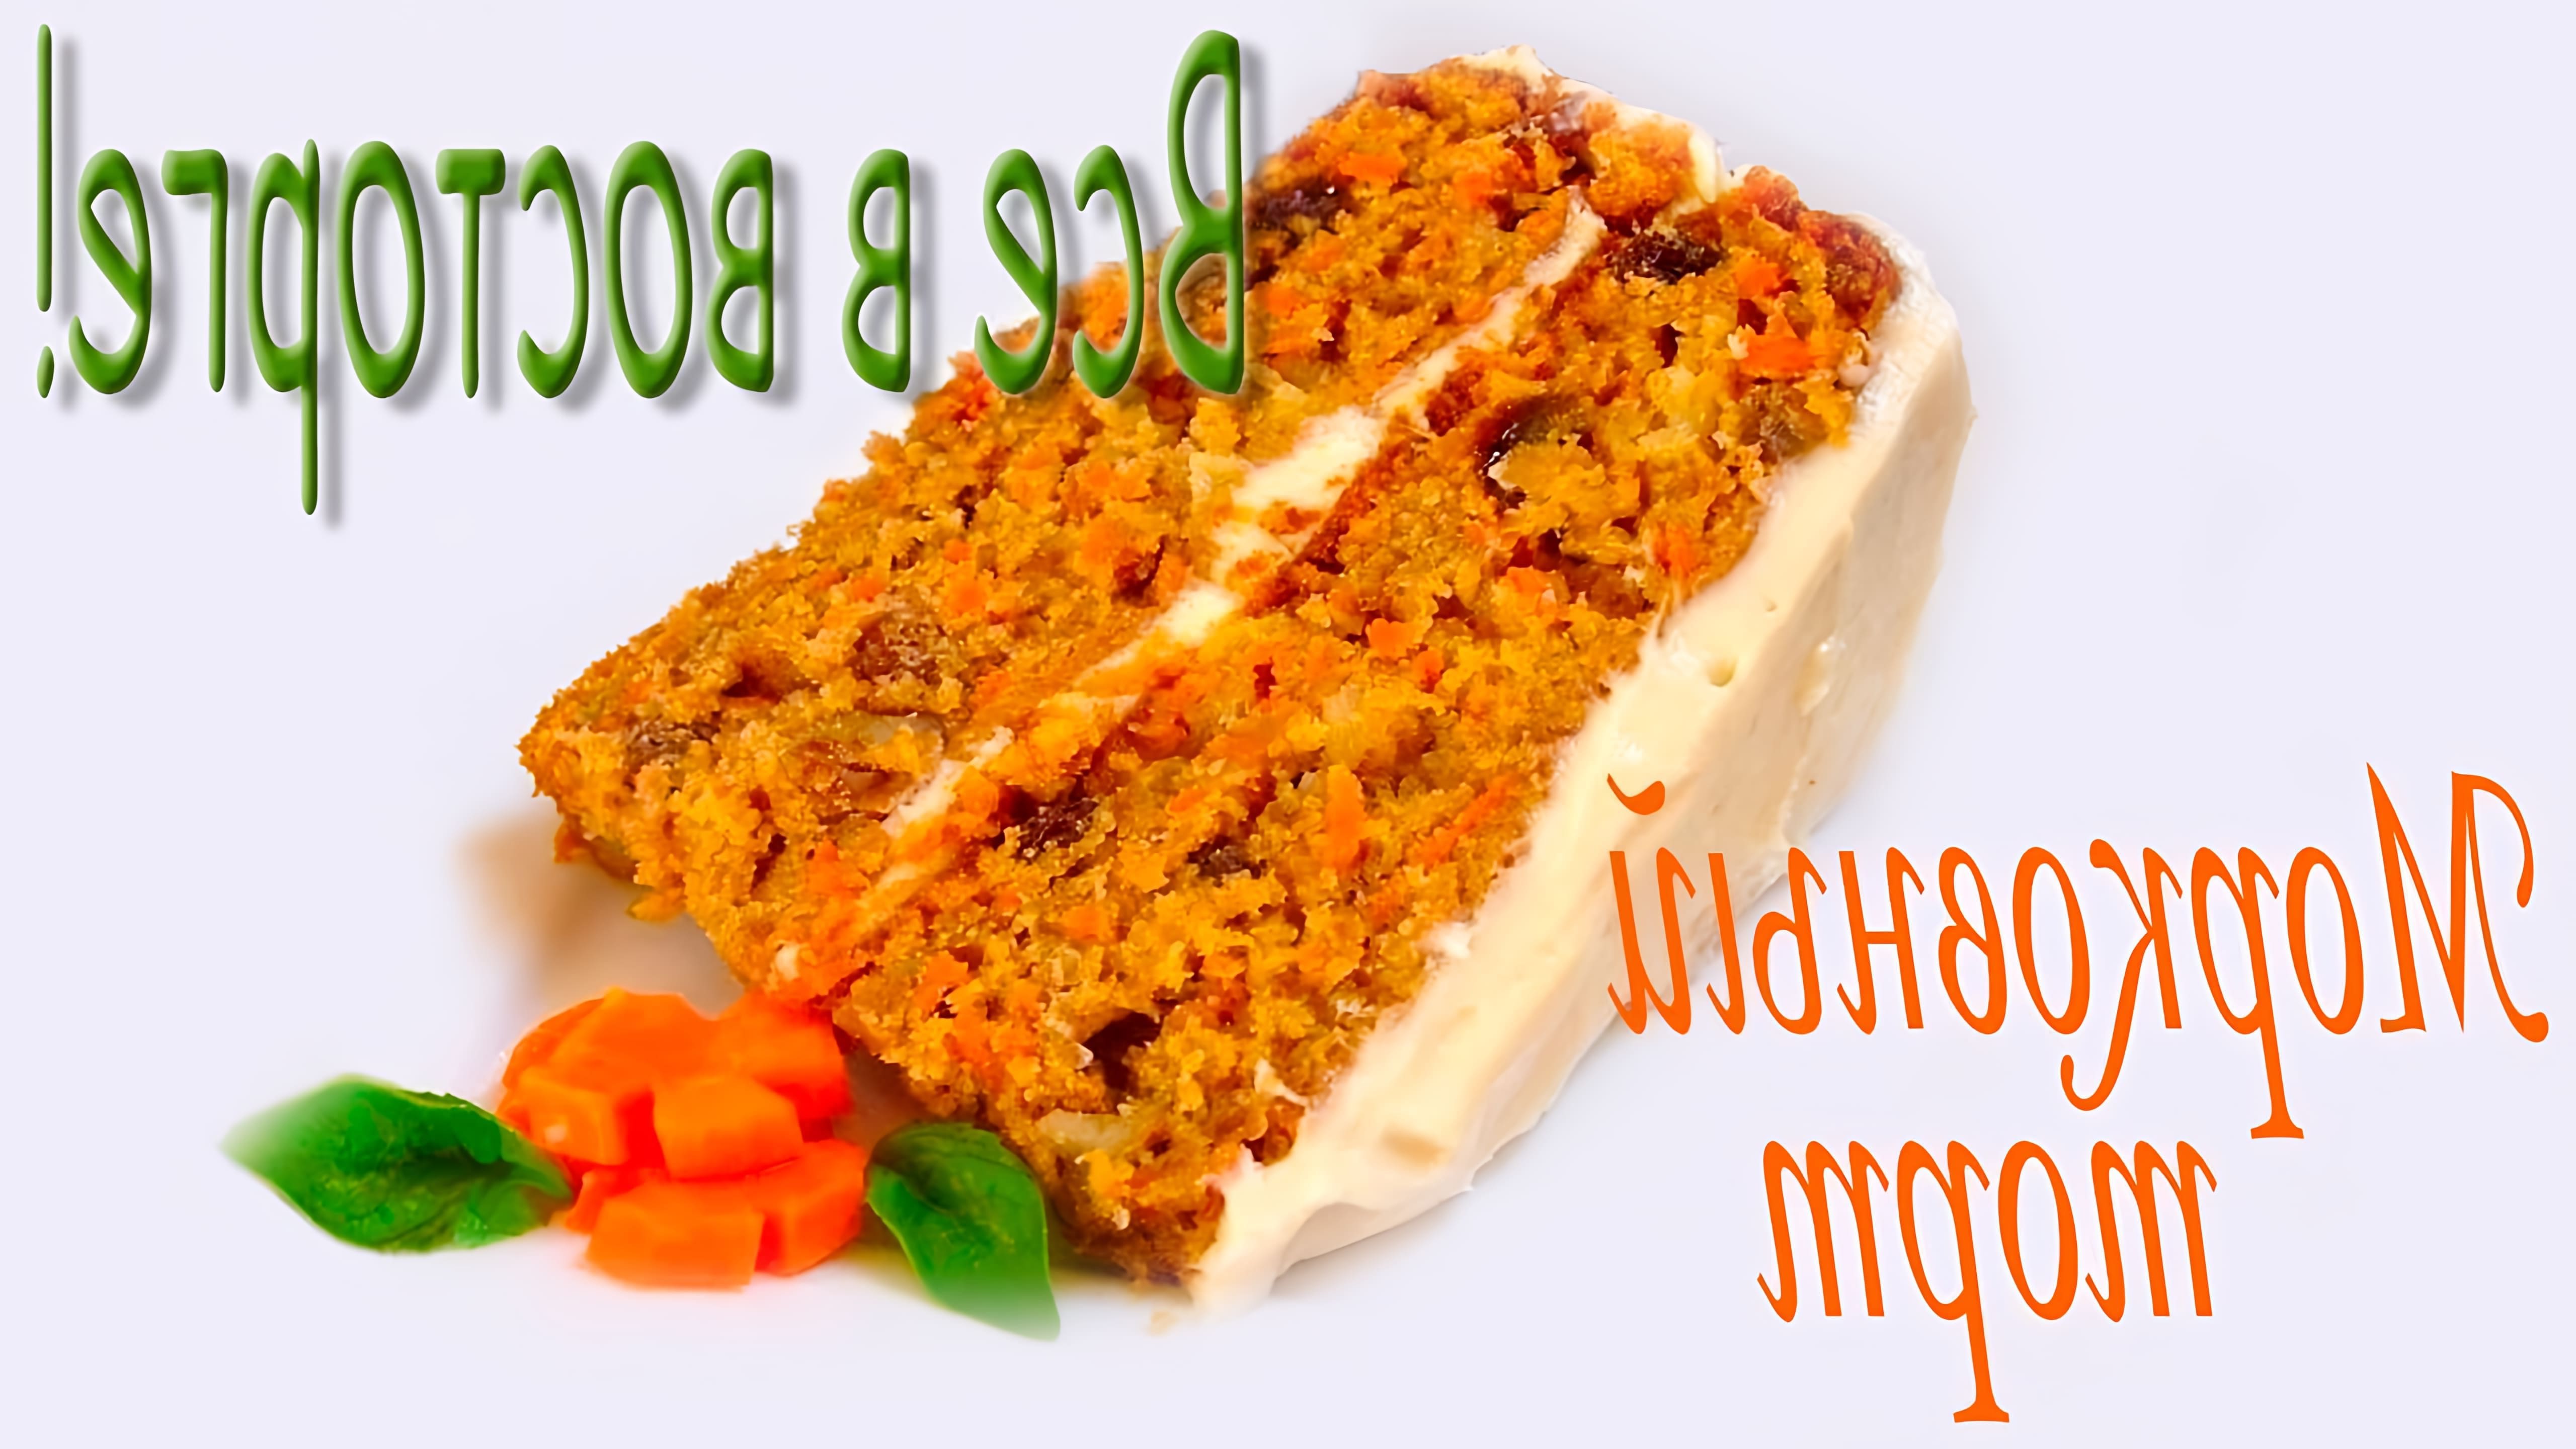 В этом видео представлен рецепт морковного торта под названием "Любимый"